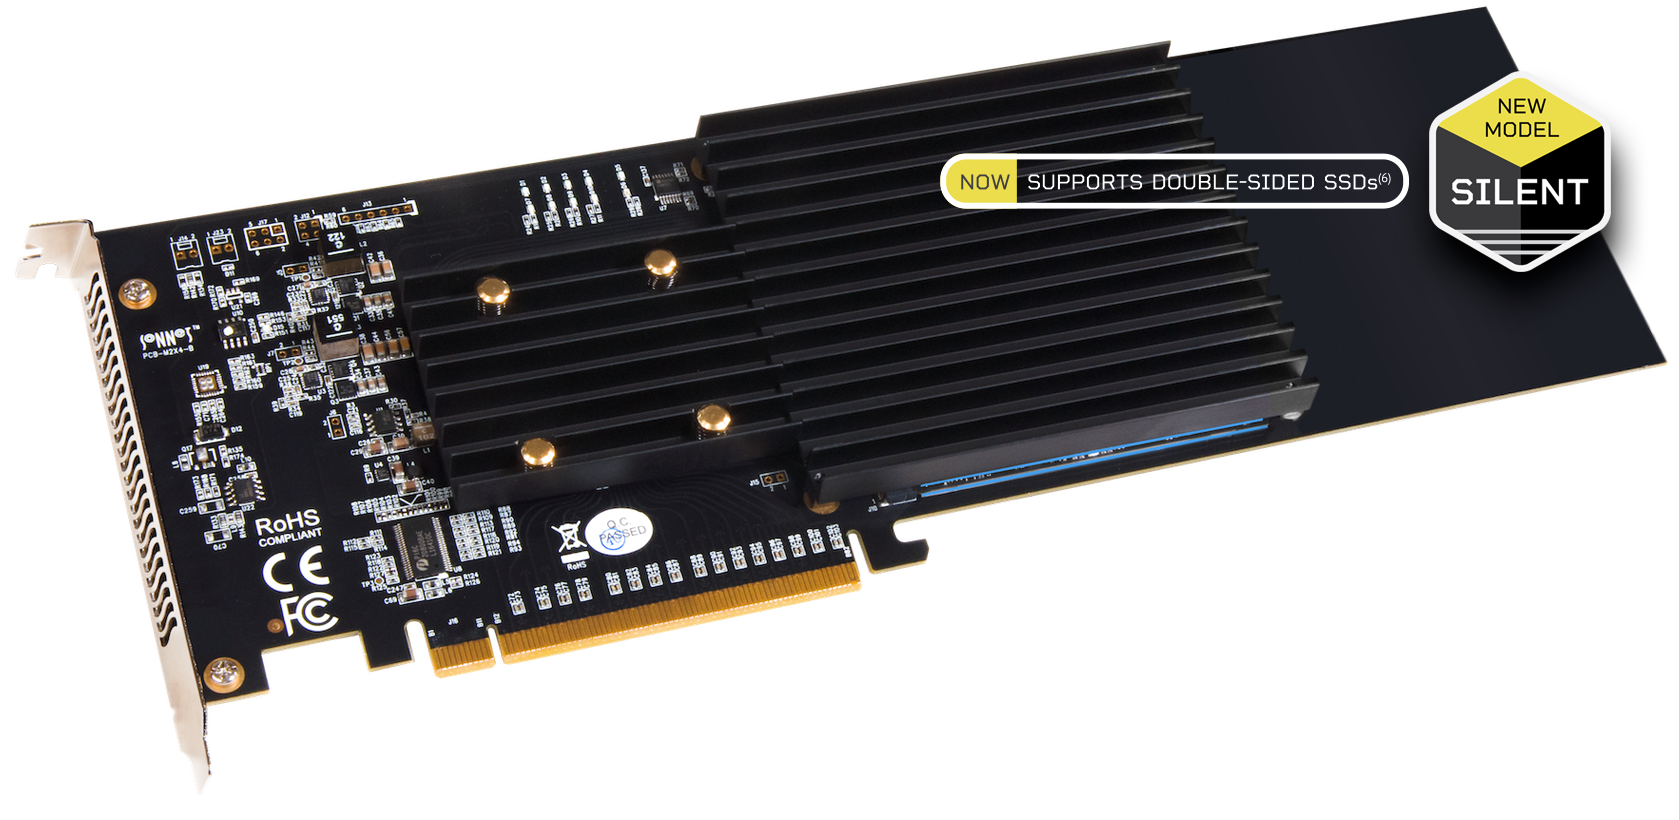 Sonnet M.2 NVMe SSD 4x4 PCIe Card (Silent) – SONNETTECH